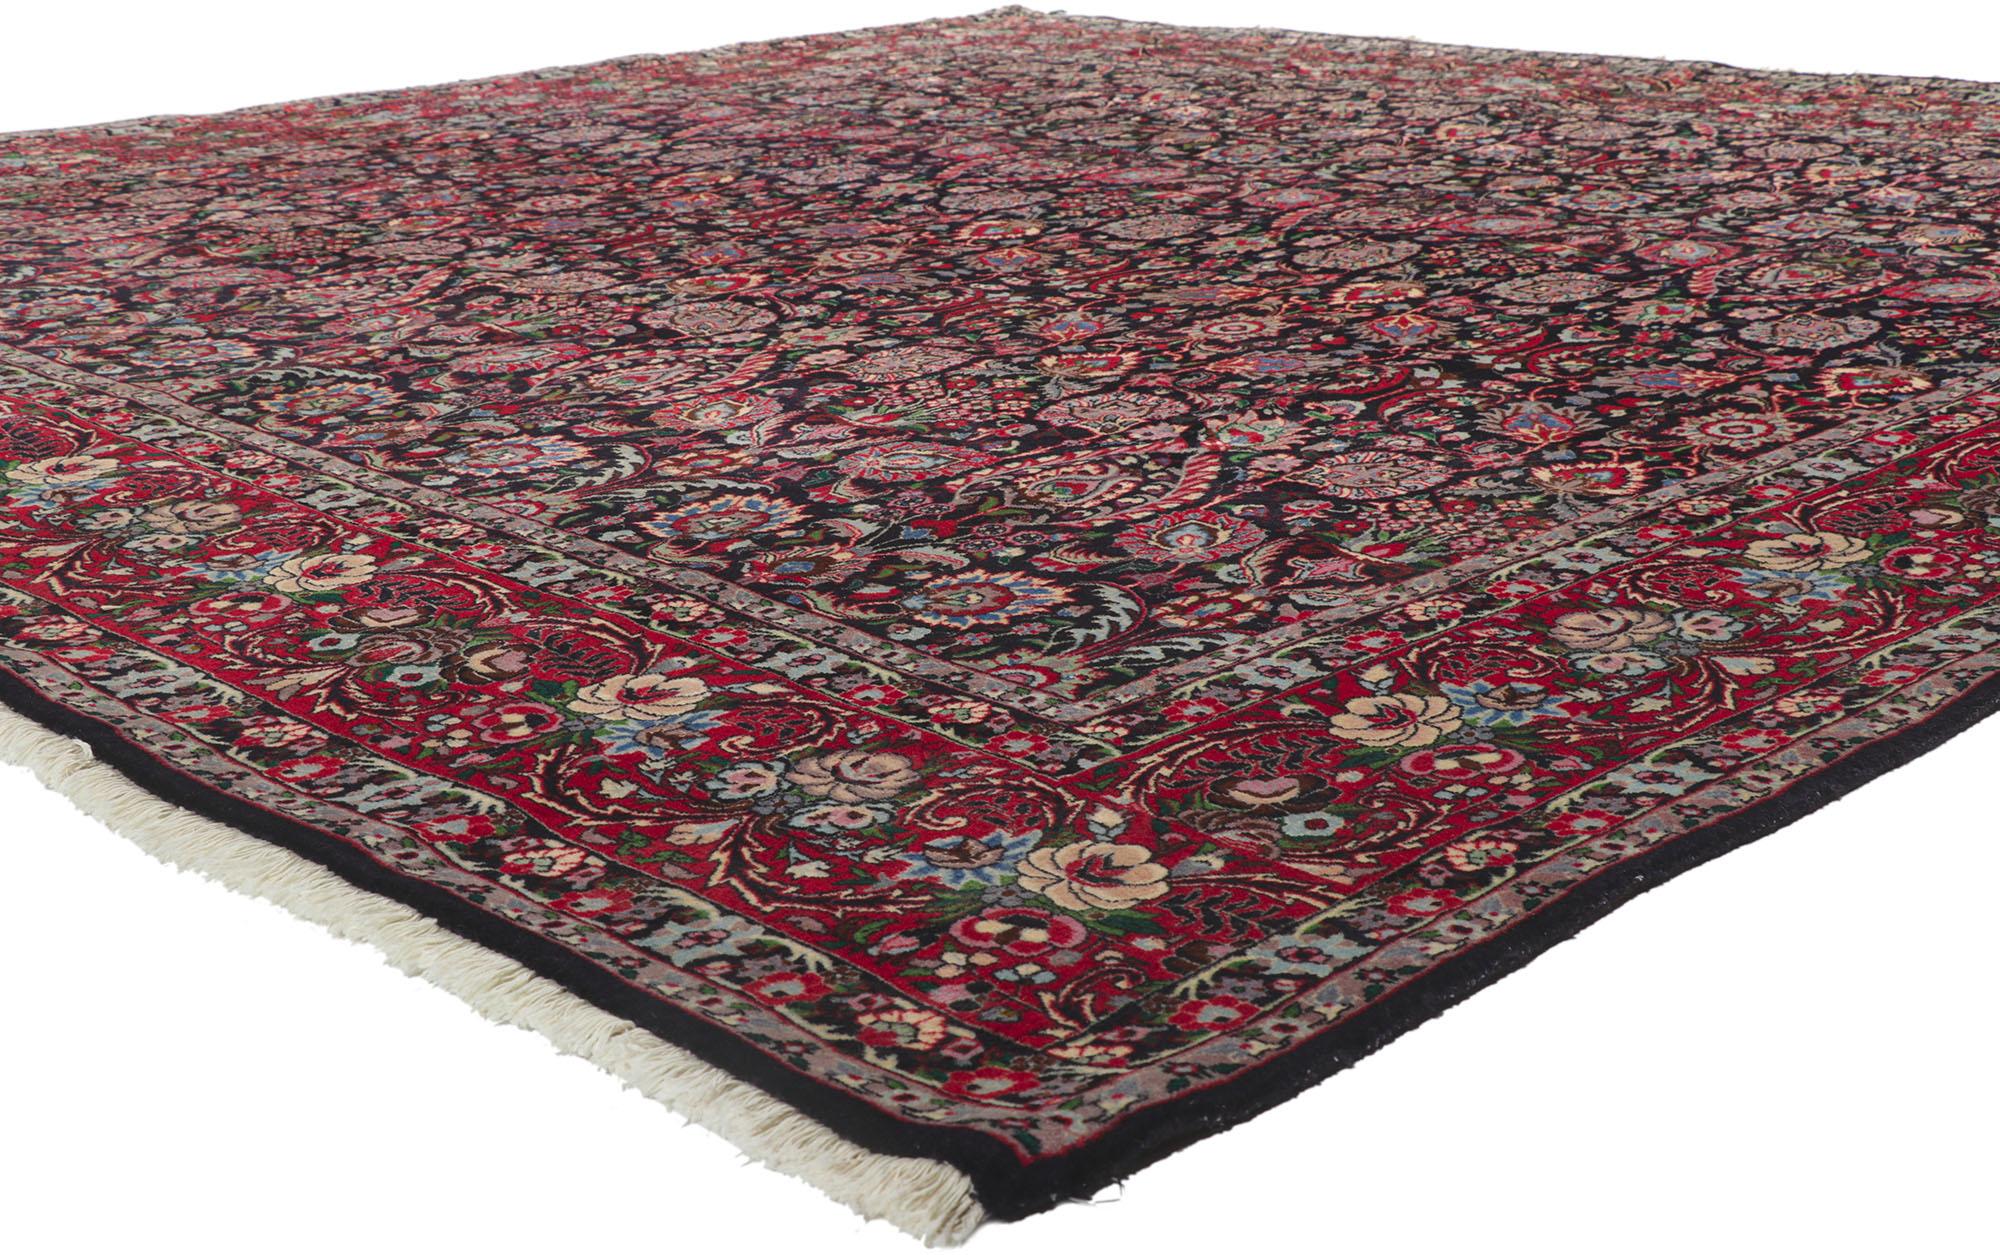 78161 Persischer Tekab Bijar-Teppich mit All-Over-Design 09'11 x 10'01. Mit seiner dunklen, aber lebendigen Farbpalette und den ornamentalen Details verkörpert dieser handgeknüpfte Teppich aus alter persischer Wolle von Tekab Bijar den